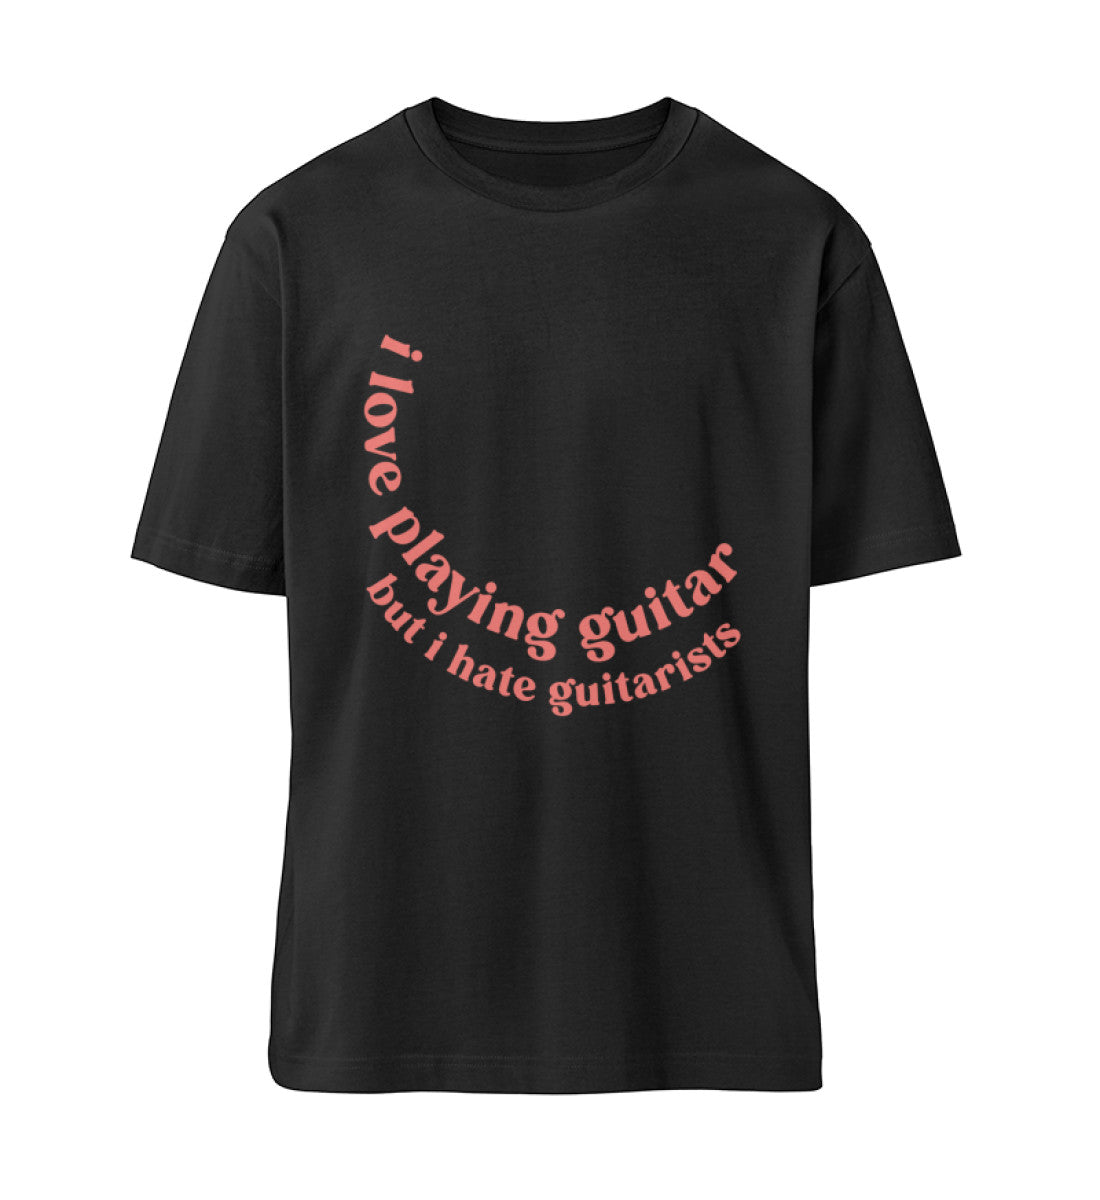 Schwarz T-Shirts Relaxed Fit für Frauen und Männer bedruckt mit Print Design der Love and Hate Edition im Roger Rockawoo Clothing Webstore